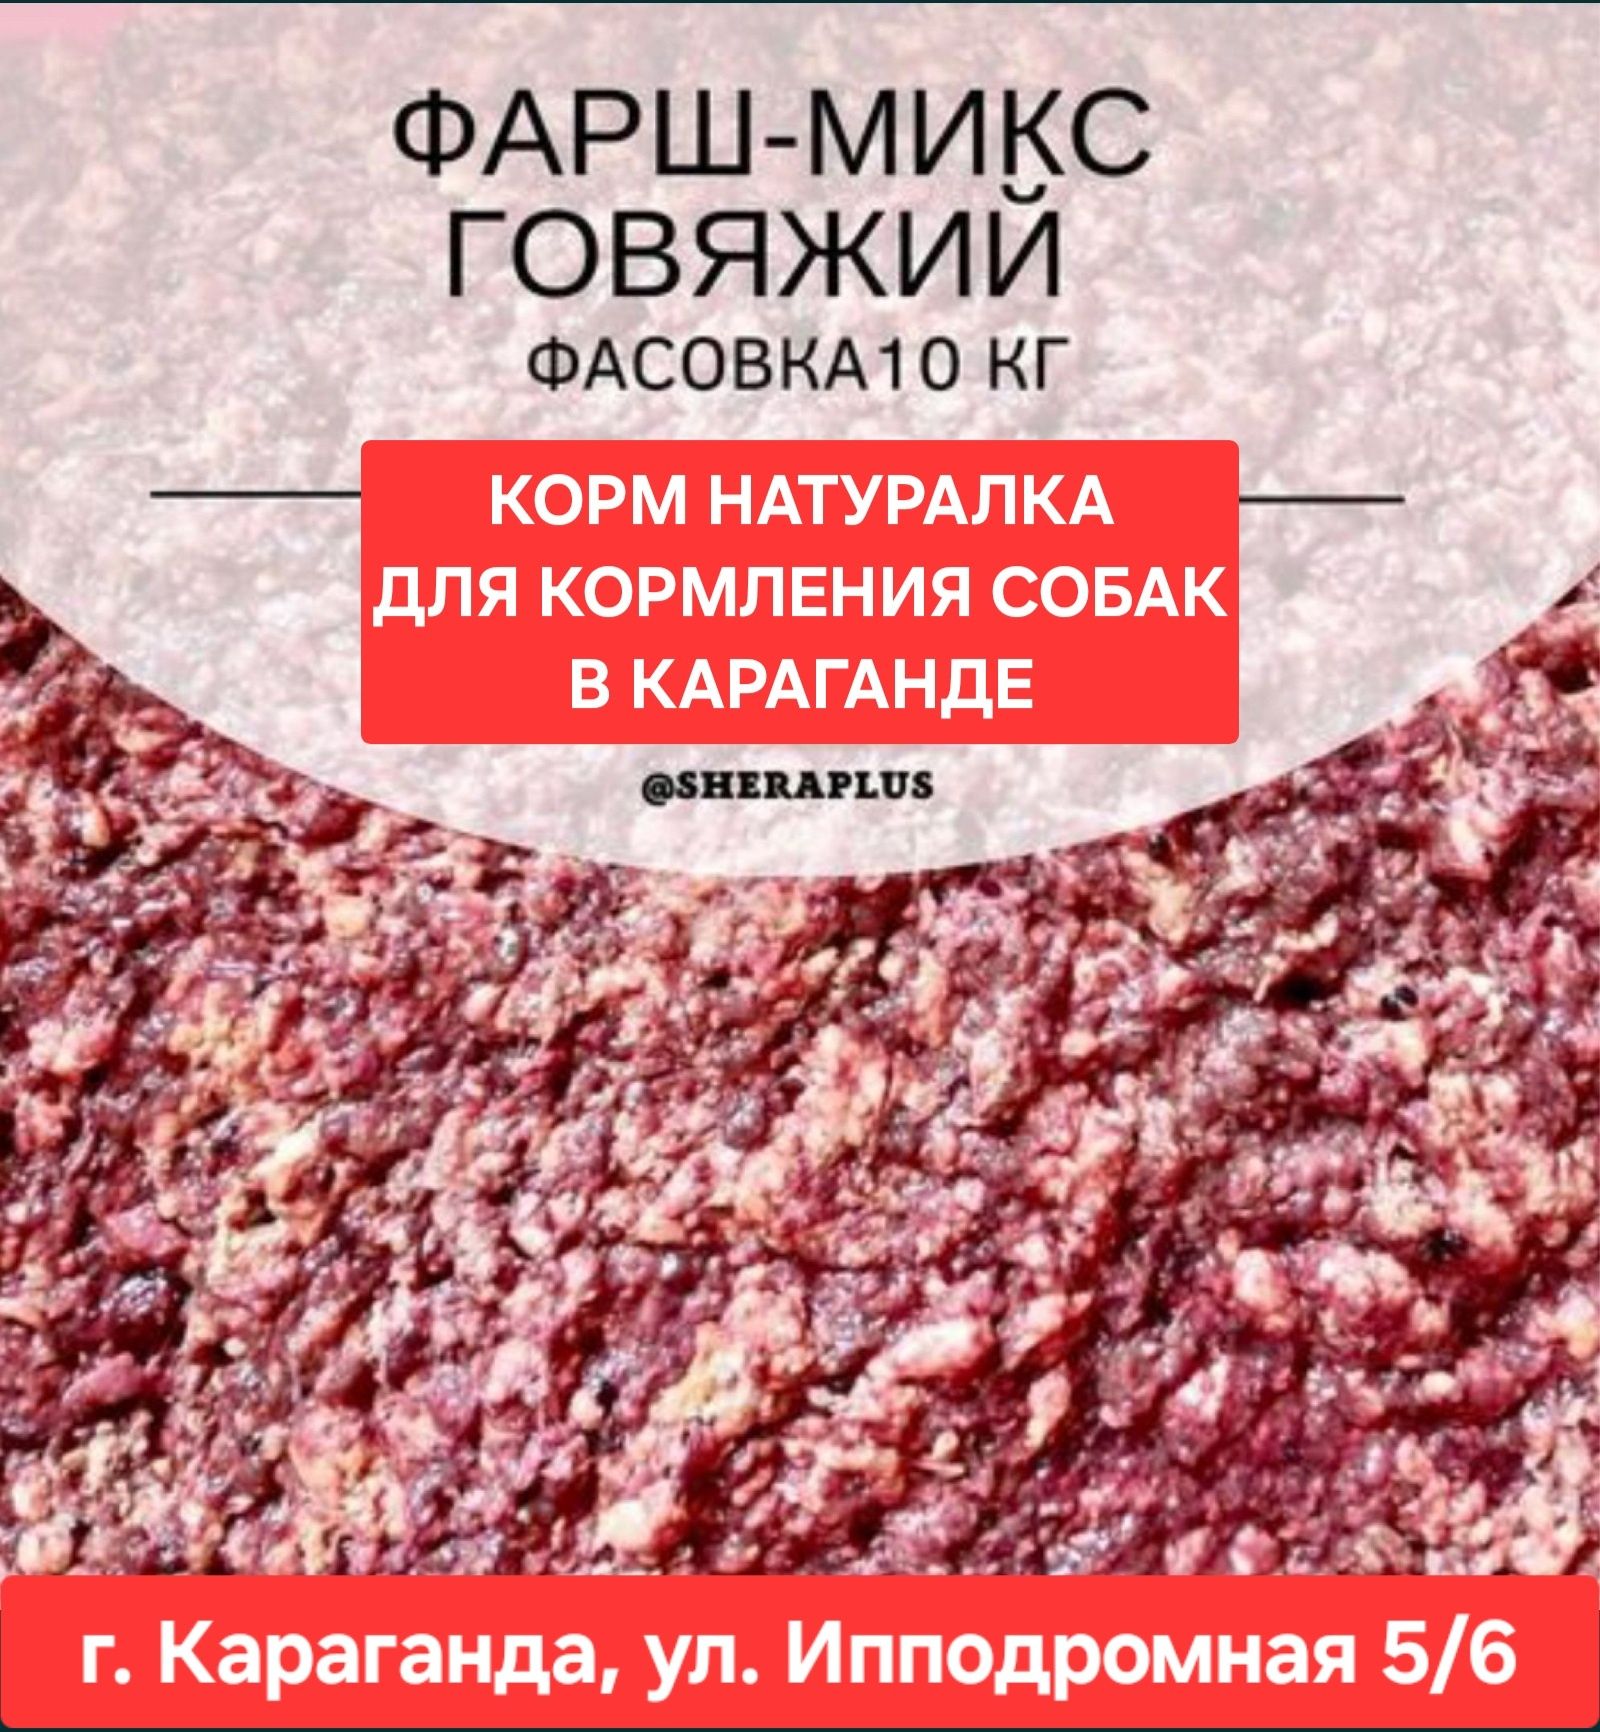 Фарш-микс из говядины для кормления собак натуралкой в Караганде корм